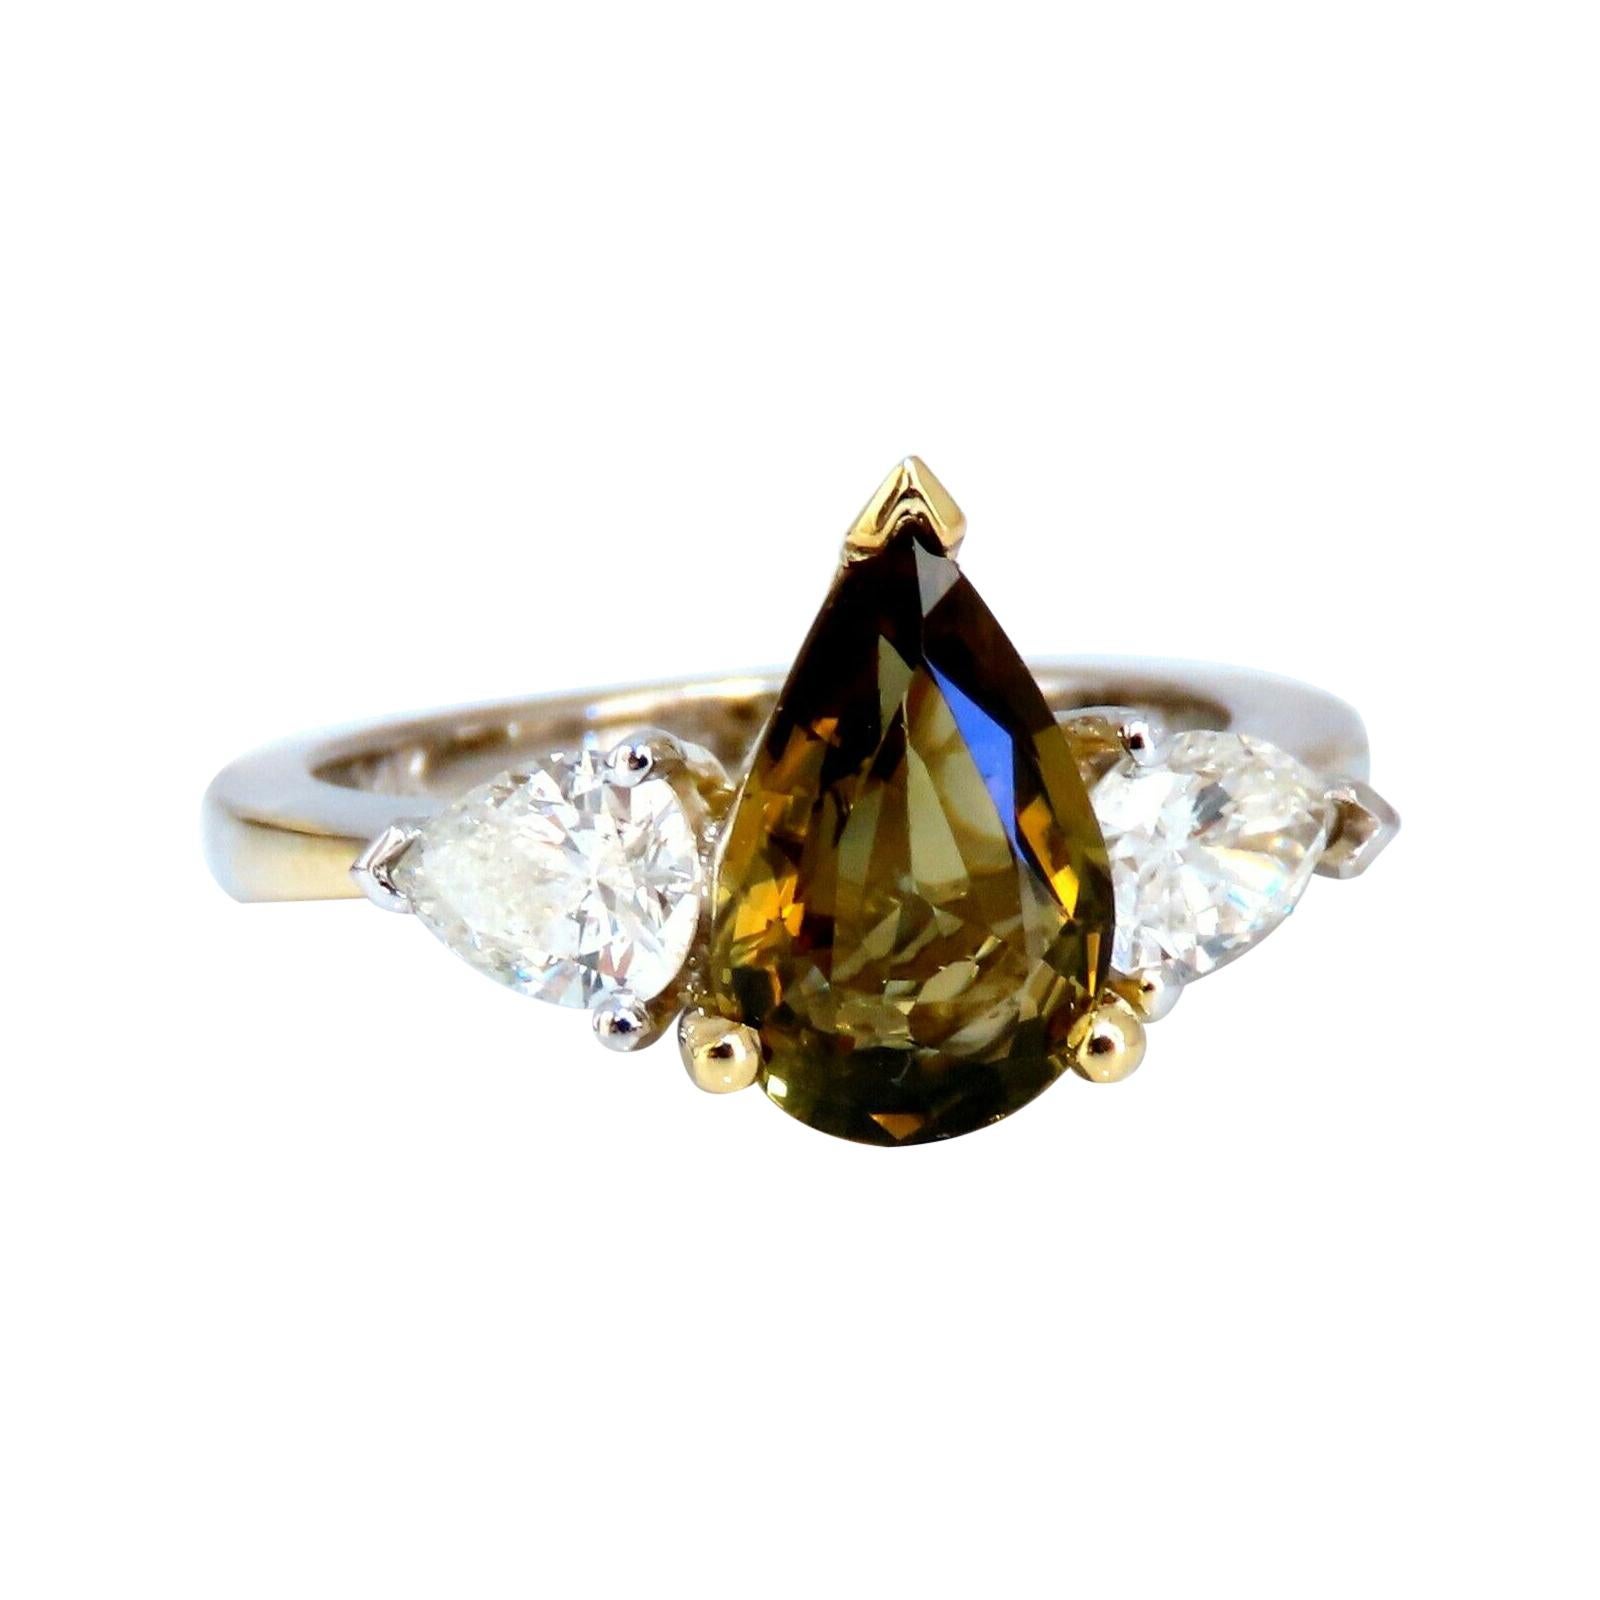 Bague en or 14 carats avec diamants et saphir brun jaune, de 2,04 carats, certifié GIA, de couleur naturelle et sans chaleur